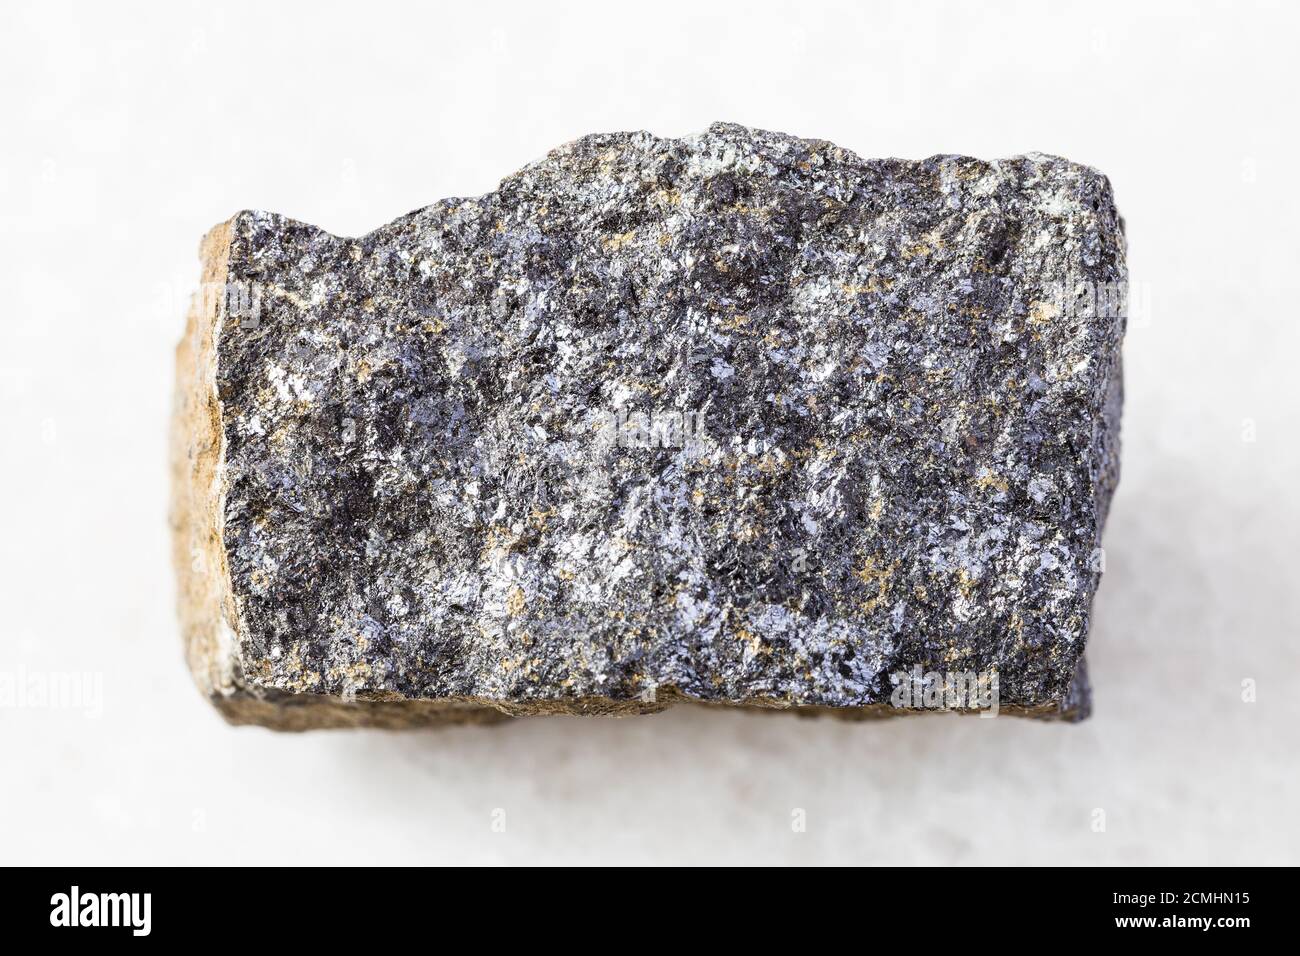 Nahaufnahme der Probe des natürlichen Minerals aus geologischer Sammlung - raues Zinkerz (Sphalerit) Gestein auf weißem Marmorgrund aus Süd-Karelien, Russ Stockfoto